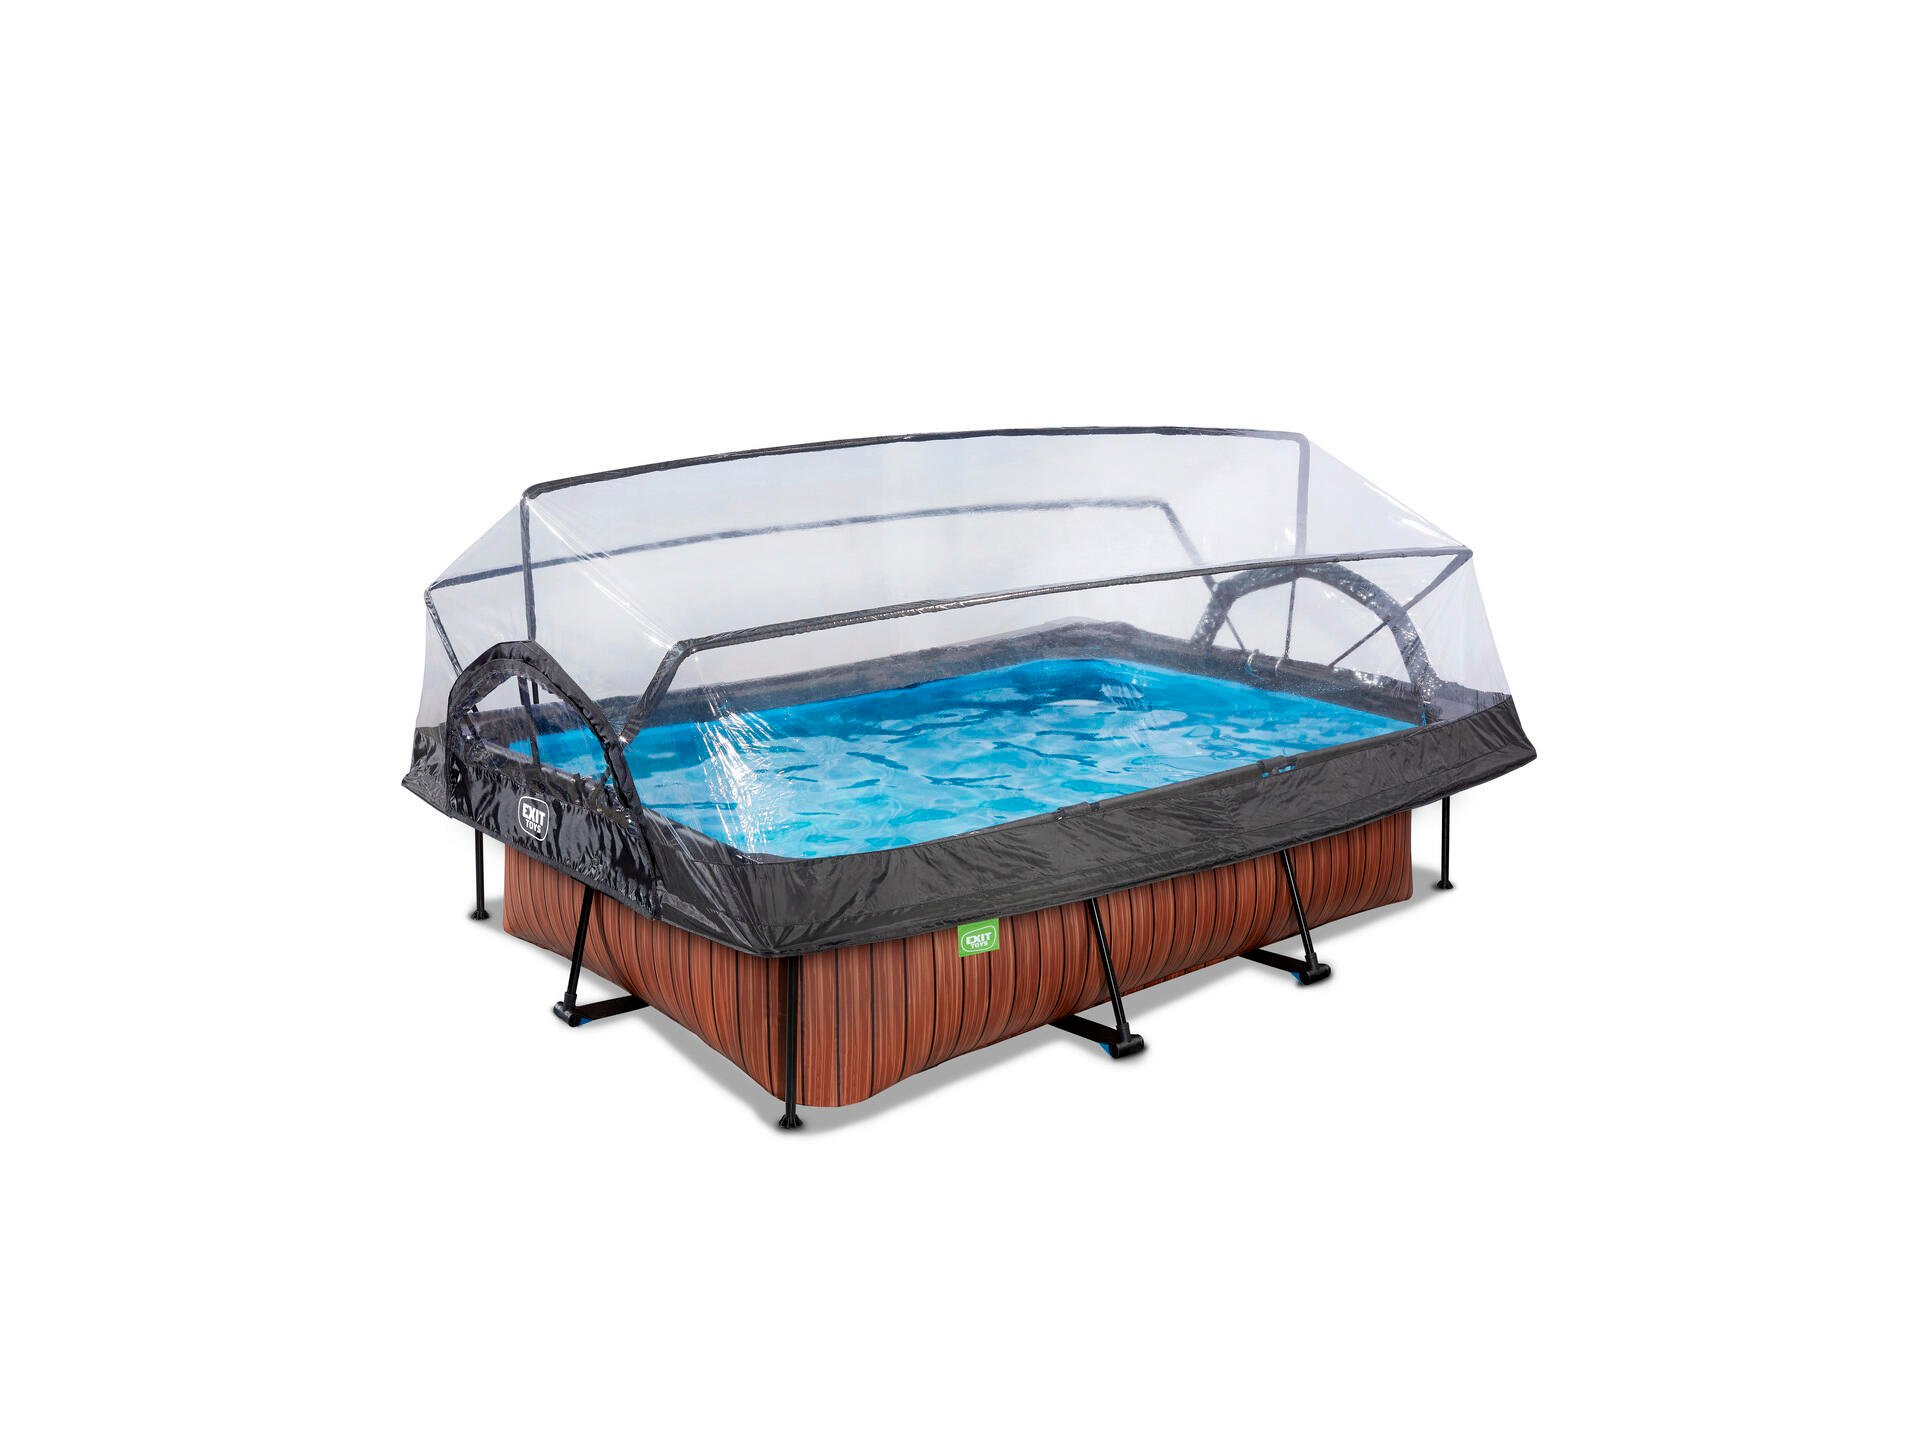 Exit Toys Wood piscine avec dôme 220x150x65 cm + pompe filtrante